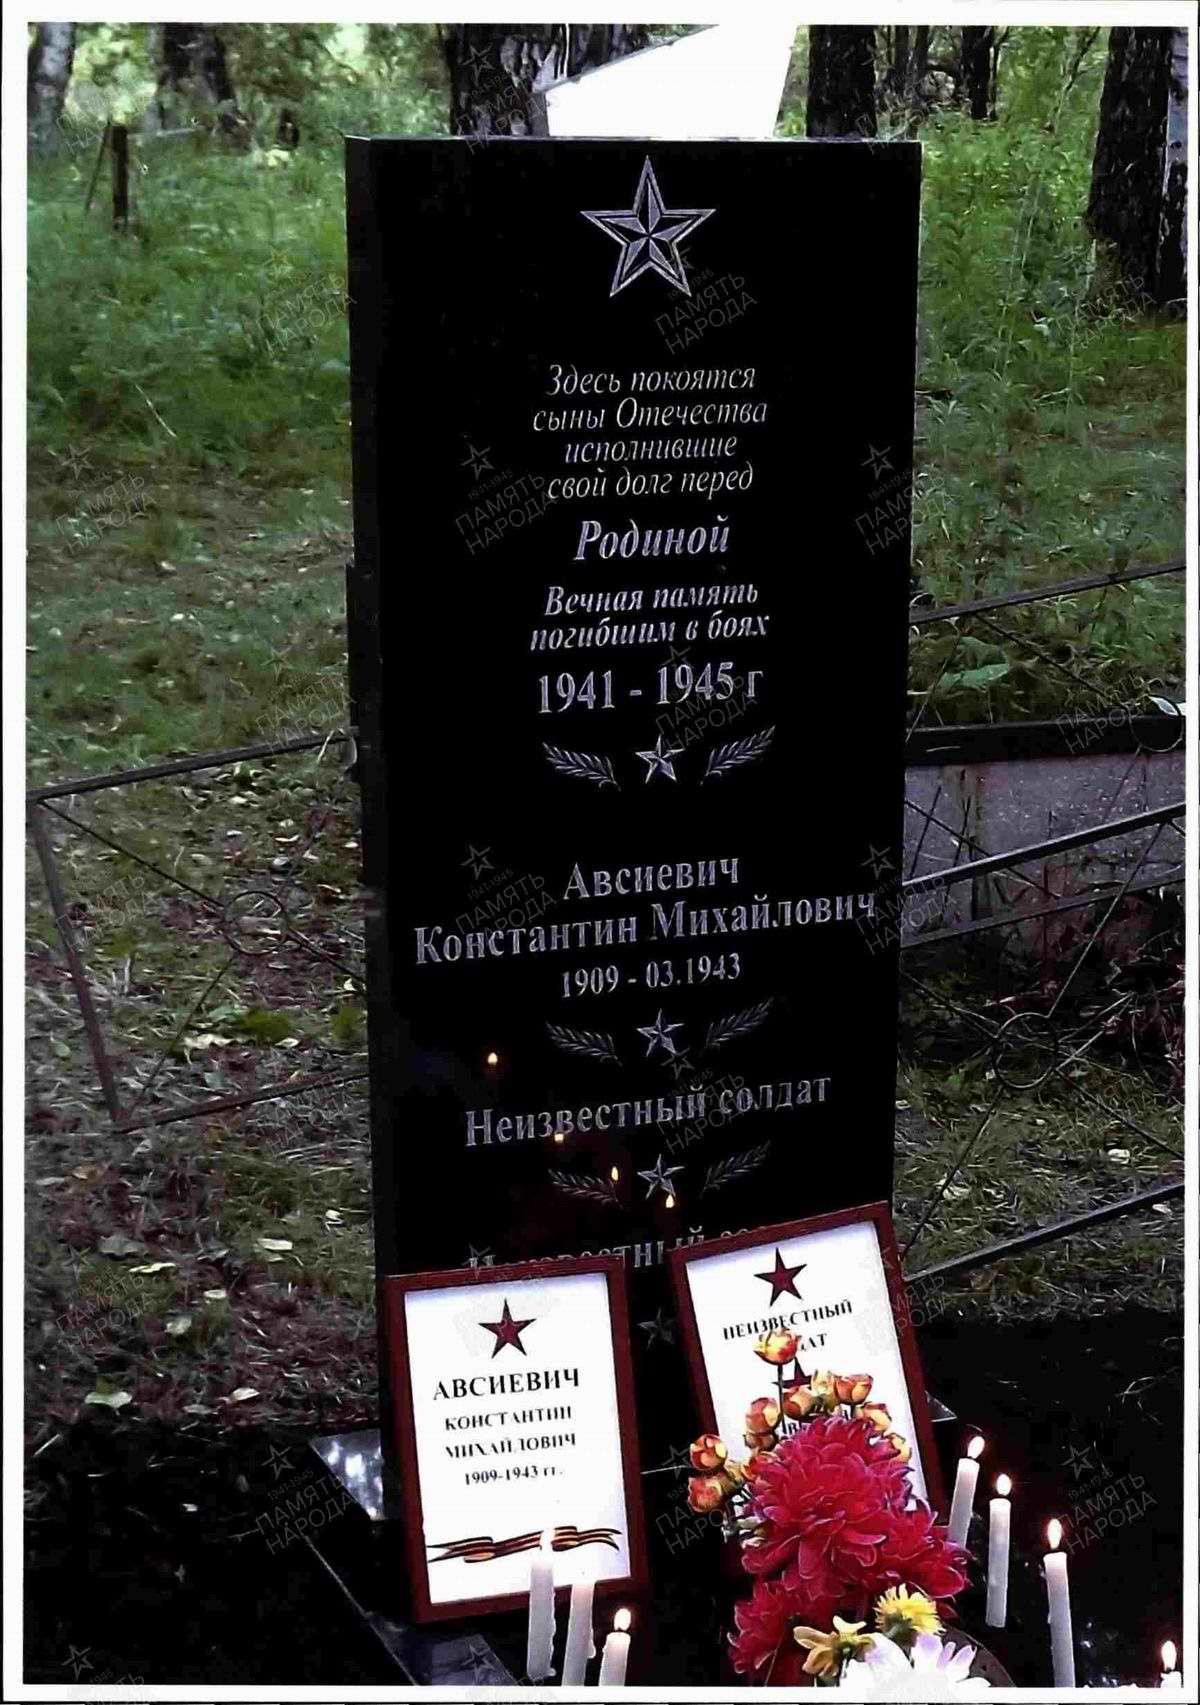 Мониторинг воинских захоронений. Могила красноармейца К.М.Авсиевича и еще 2 неизвестных солдат.